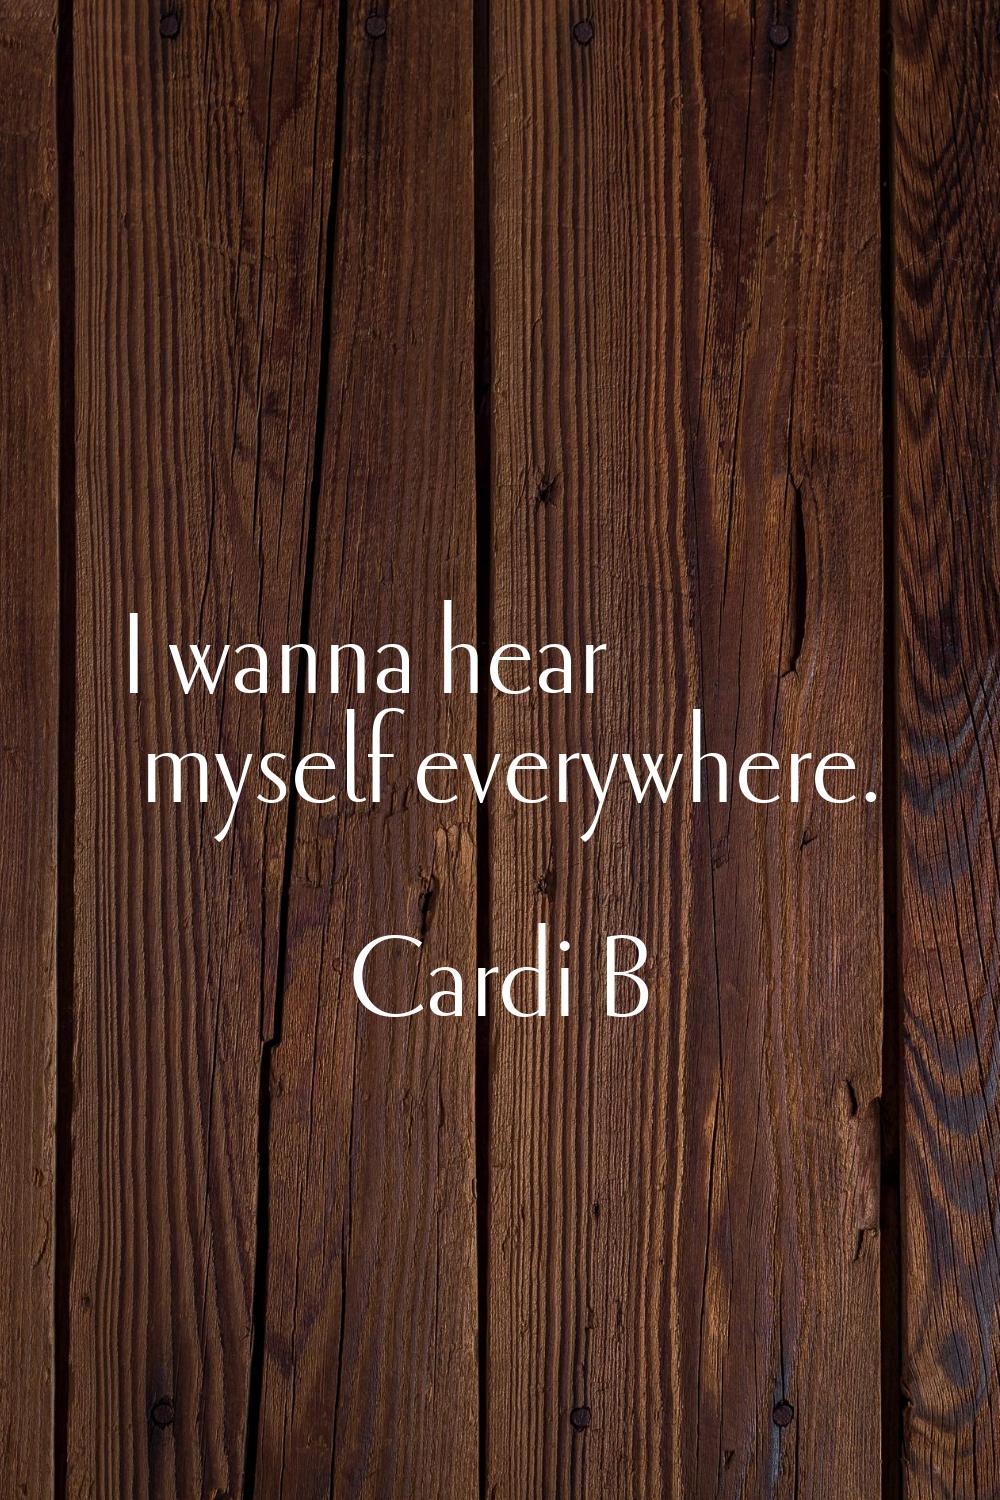 I wanna hear myself everywhere.